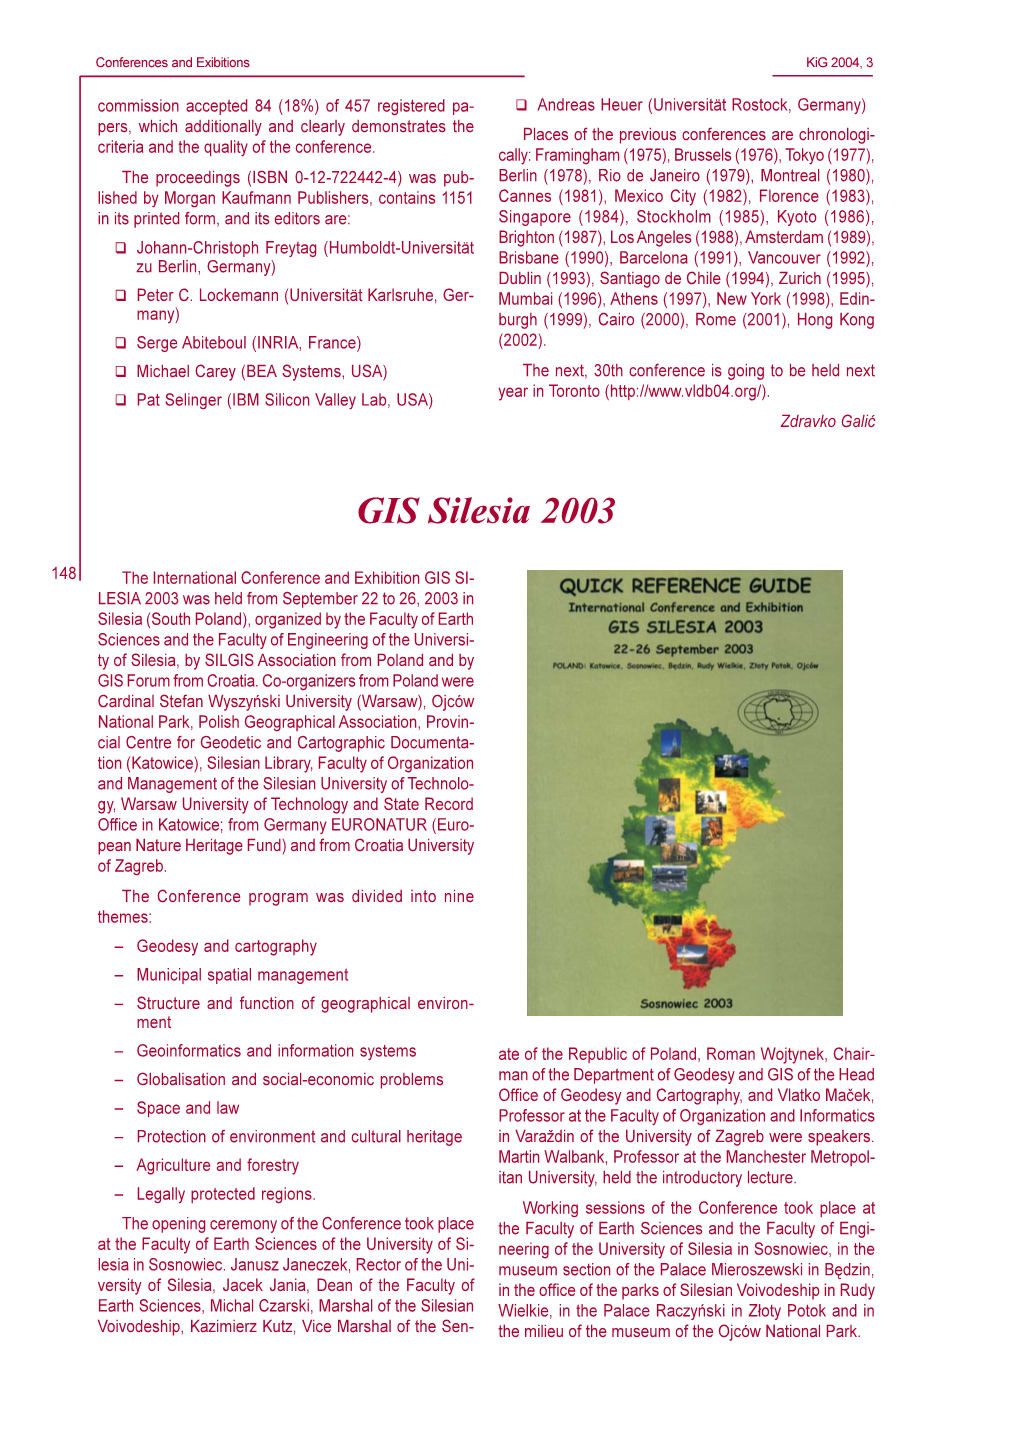 GIS Silesia 2003